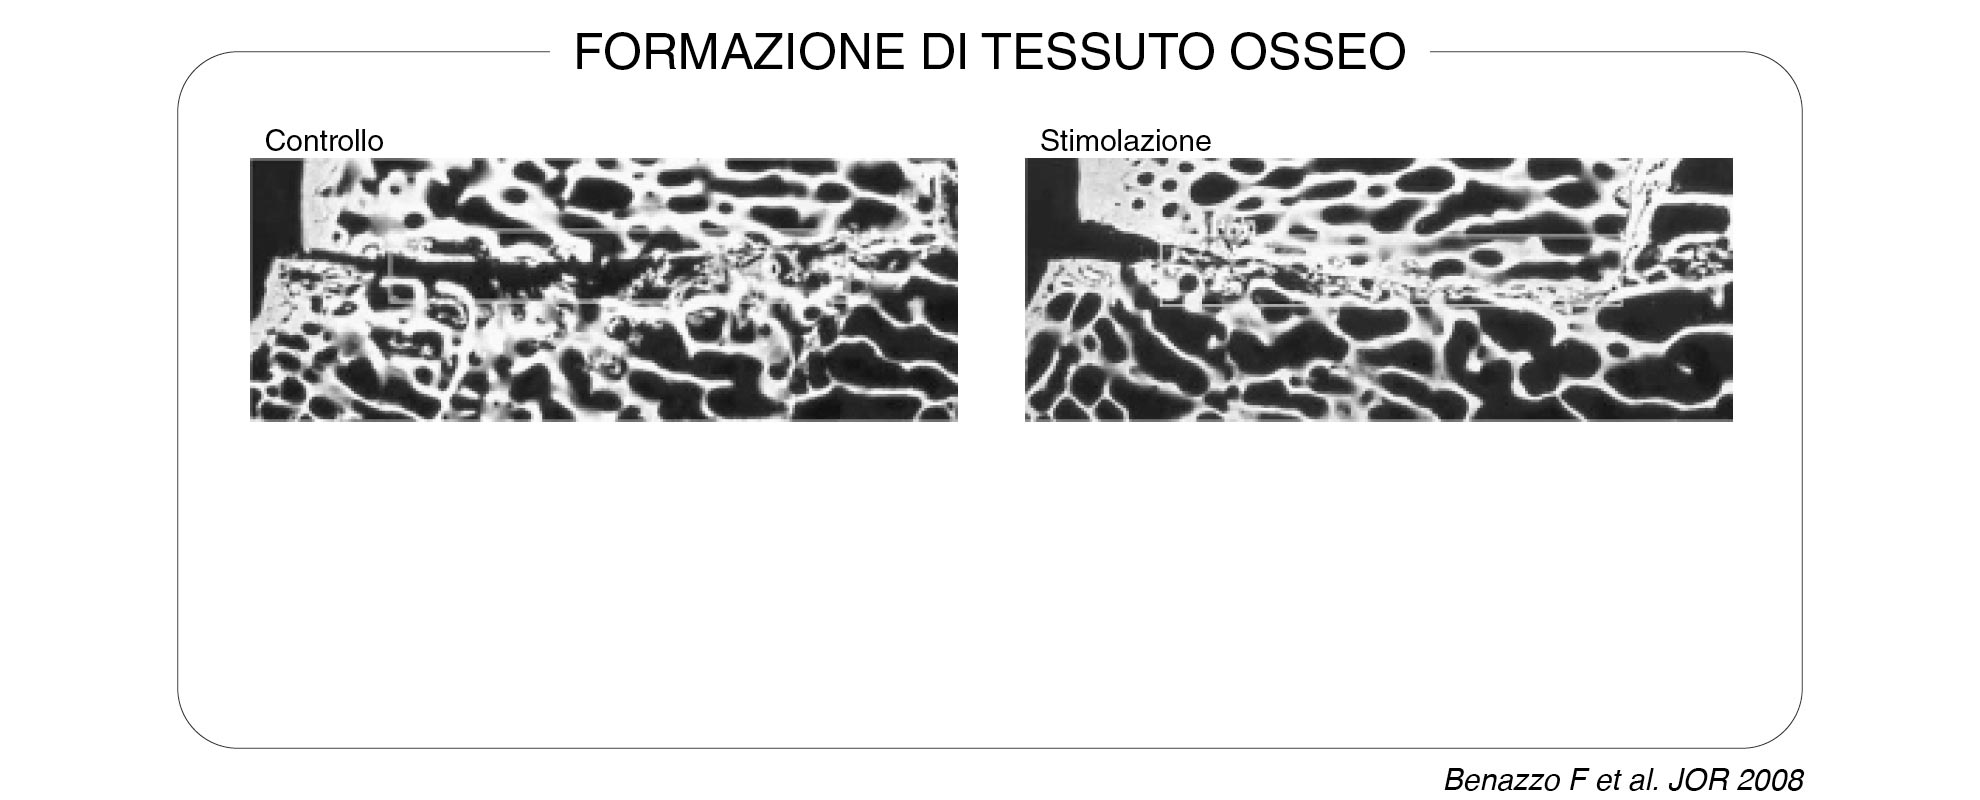 Formazione-di-tessuto-osseo-1